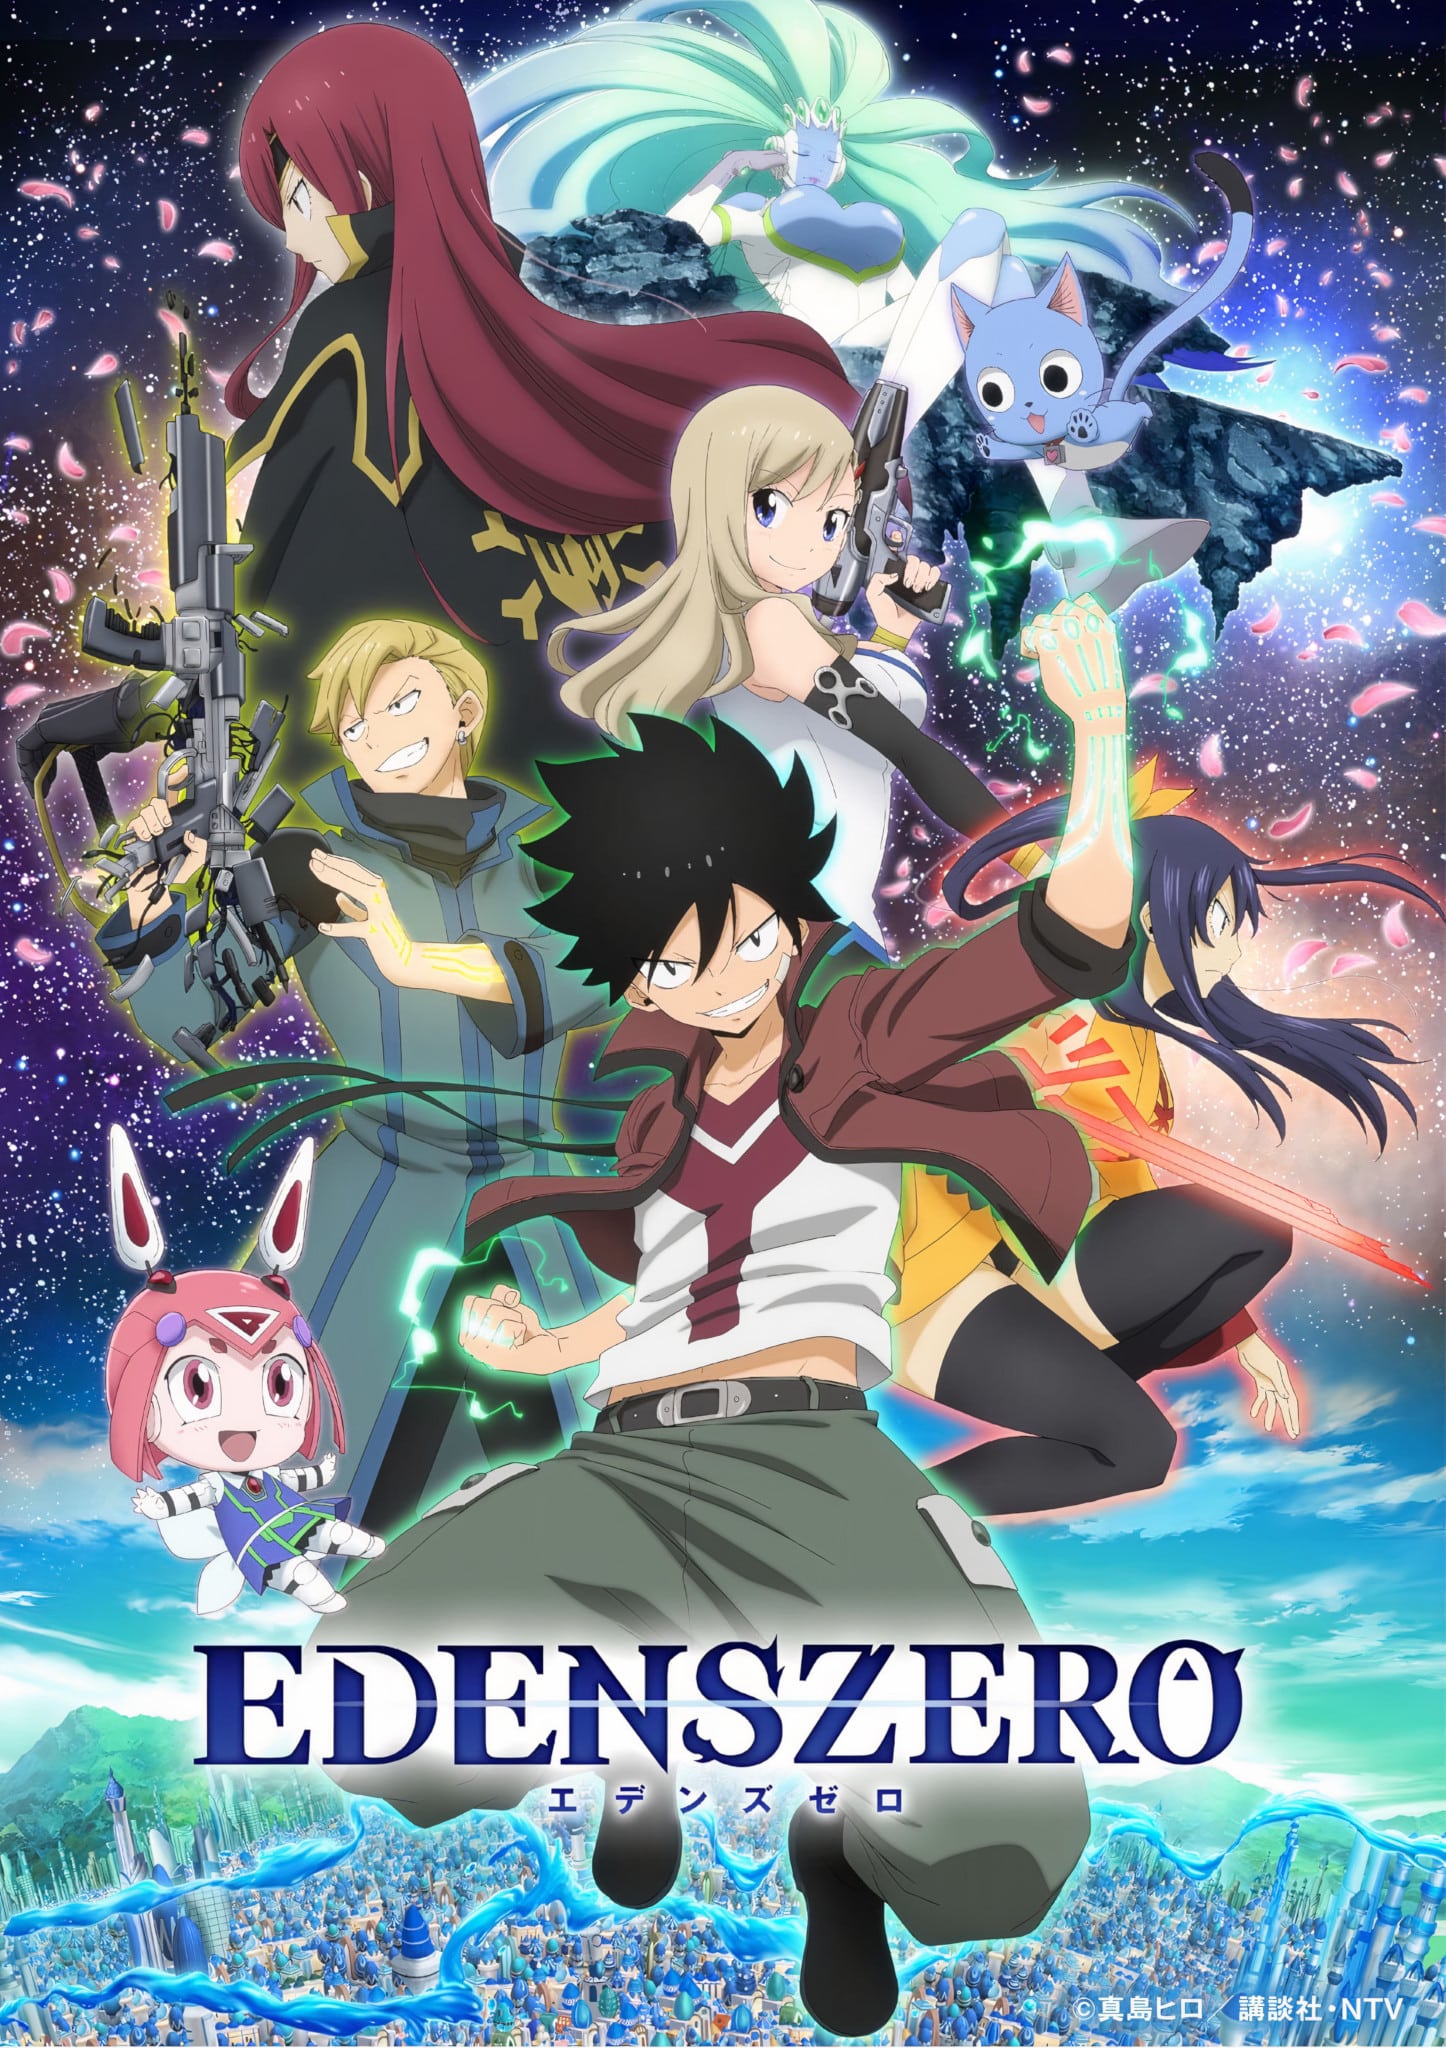 Nouveau visuel pour anime Edens Zero